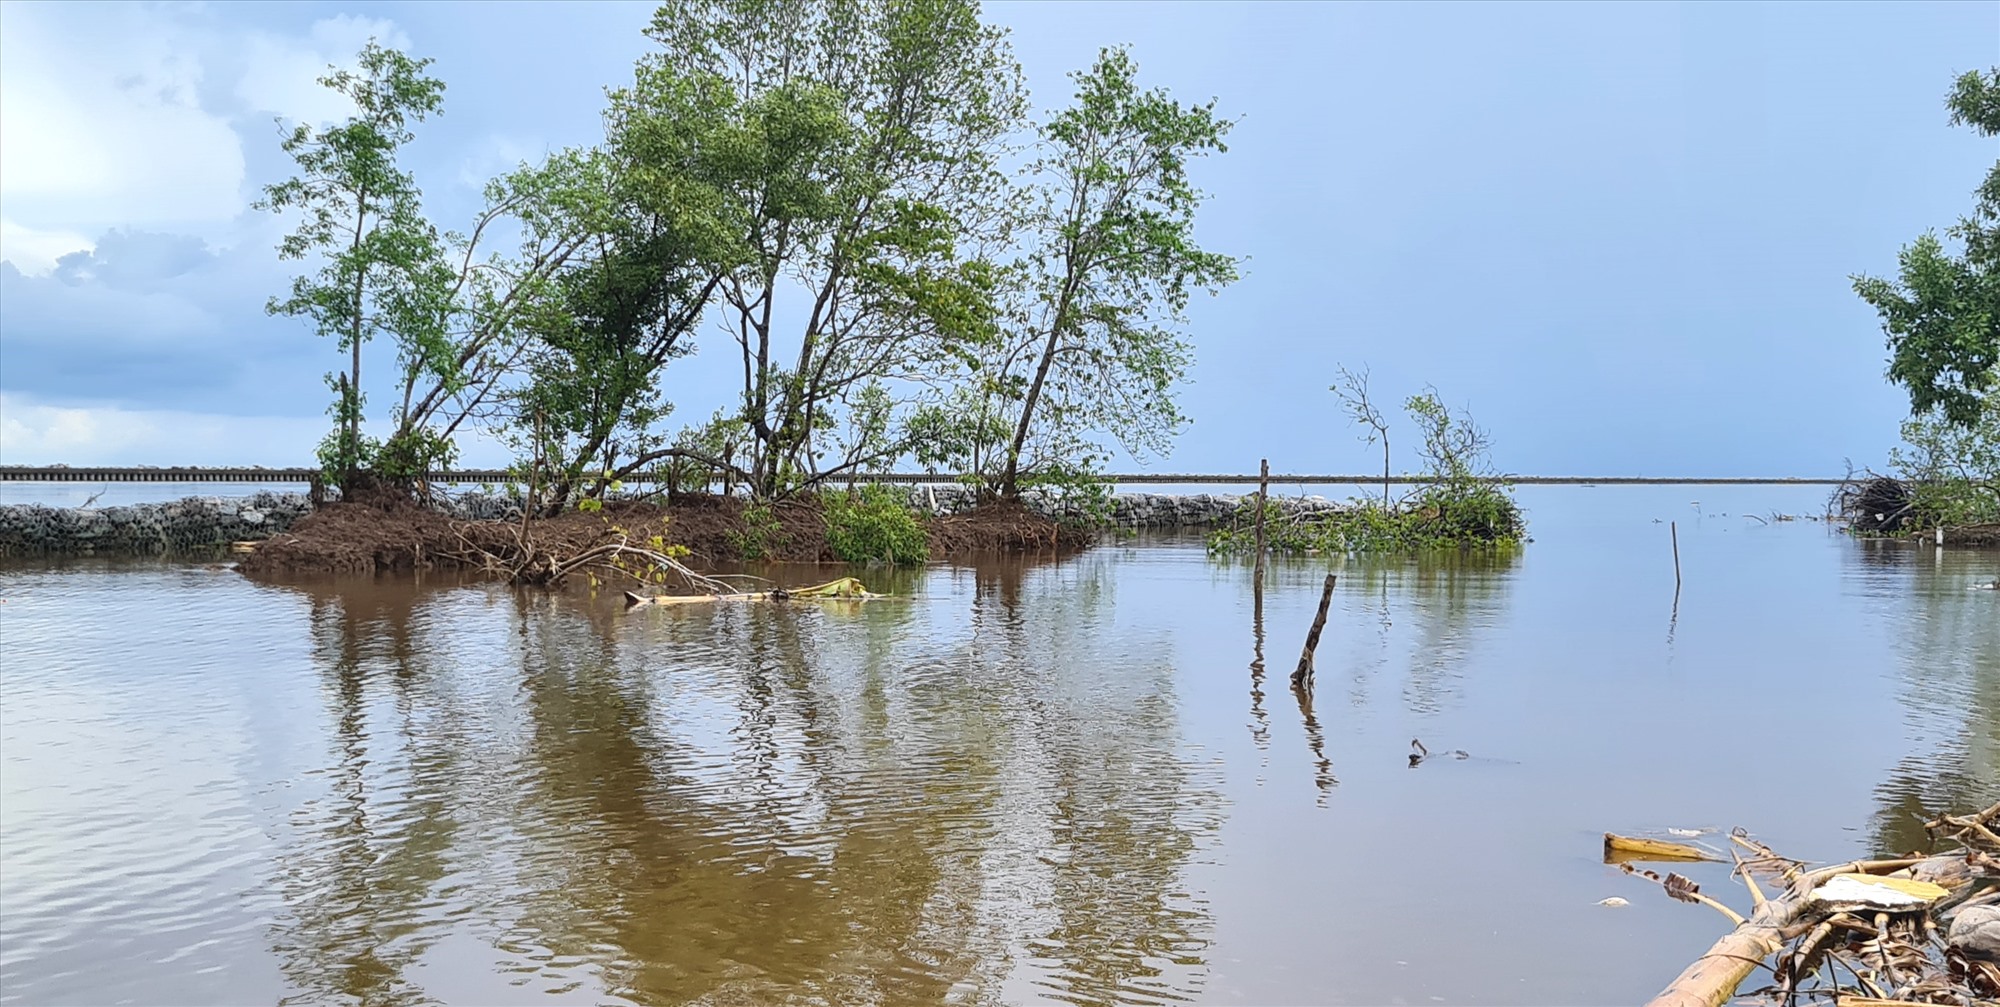 Bằng giải pháp xây kè chắn sóng gây bồi, tạo bãi tỉnh Cà Mau kỳ vọng cây rừng tự nhiên sẽ mọc lên ven biển. Ảnh: Nhật Hồ